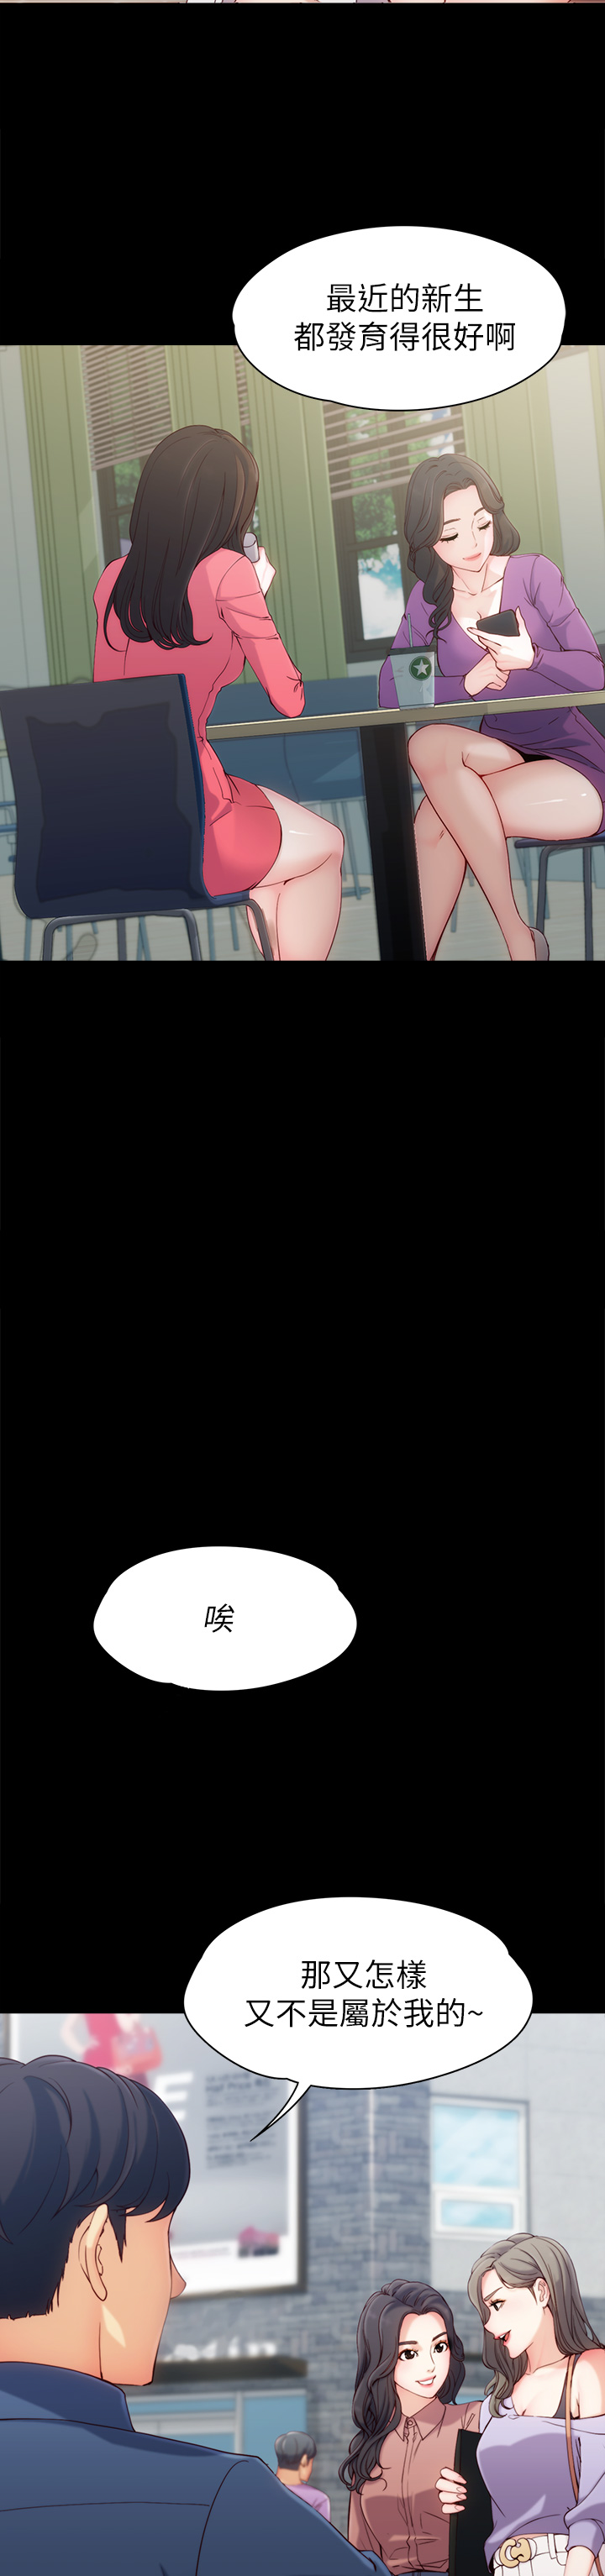 [朴敏&金Zetta]女大生世晶:无法自拔 EP.1(正體中文)高畫質版本 [朴敏&金Zetta]女大生世晶:無法自拔 第1話 女大生世晶 2019.02.27 高畫質版本